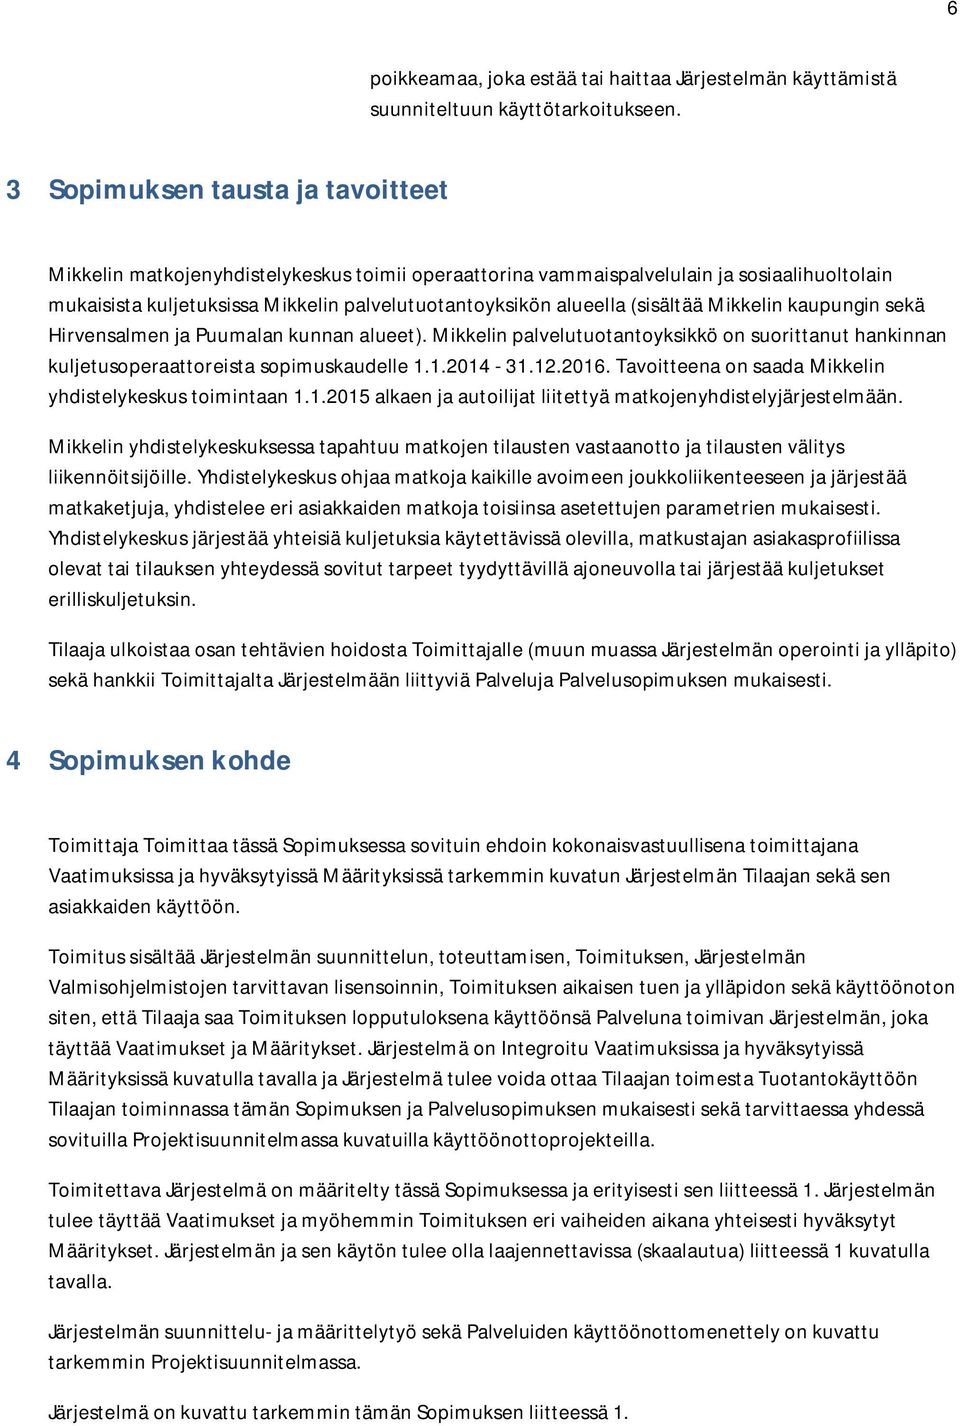 (sisältää Mikkelin kaupungin sekä Hirvensalmen ja Puumalan kunnan alueet). Mikkelin palvelutuotantoyksikkö on suorittanut hankinnan kuljetusoperaattoreista sopimuskaudelle 1.1.2014-31.12.2016.